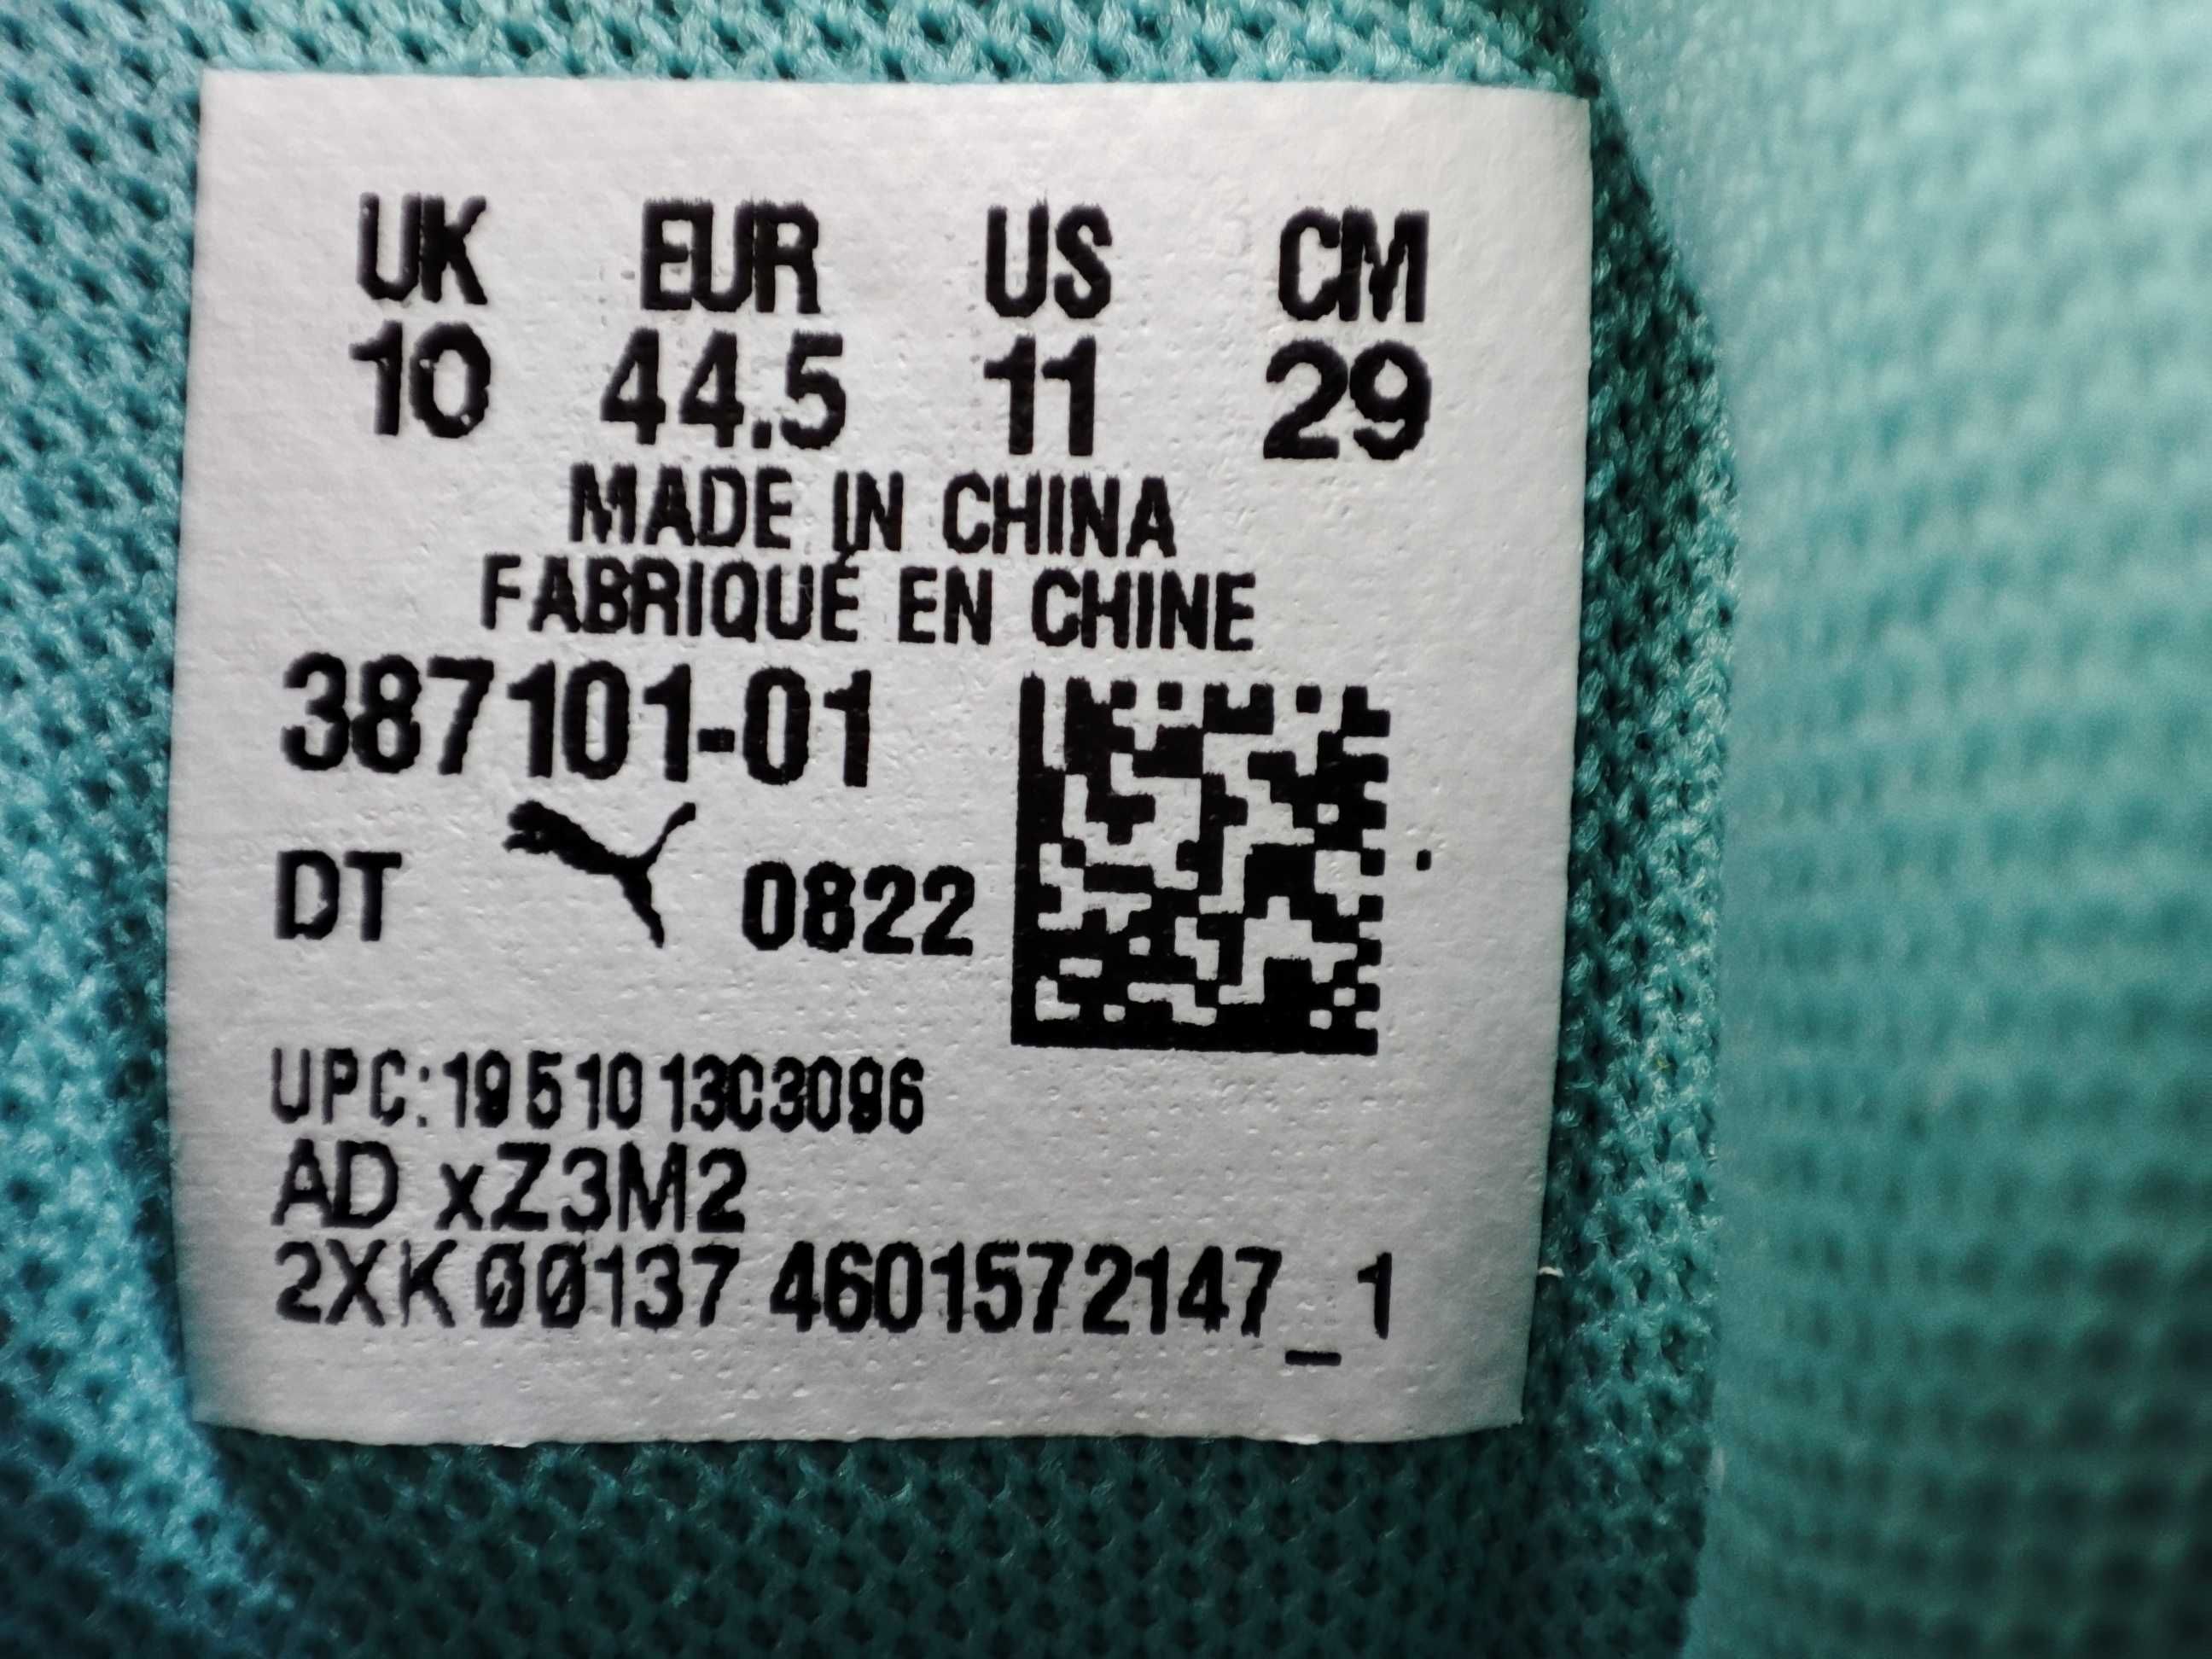 ОРИГІНАЛ100%!Кросівки Puma RS-X HC Multicolor 387101-01 (44.5р.)